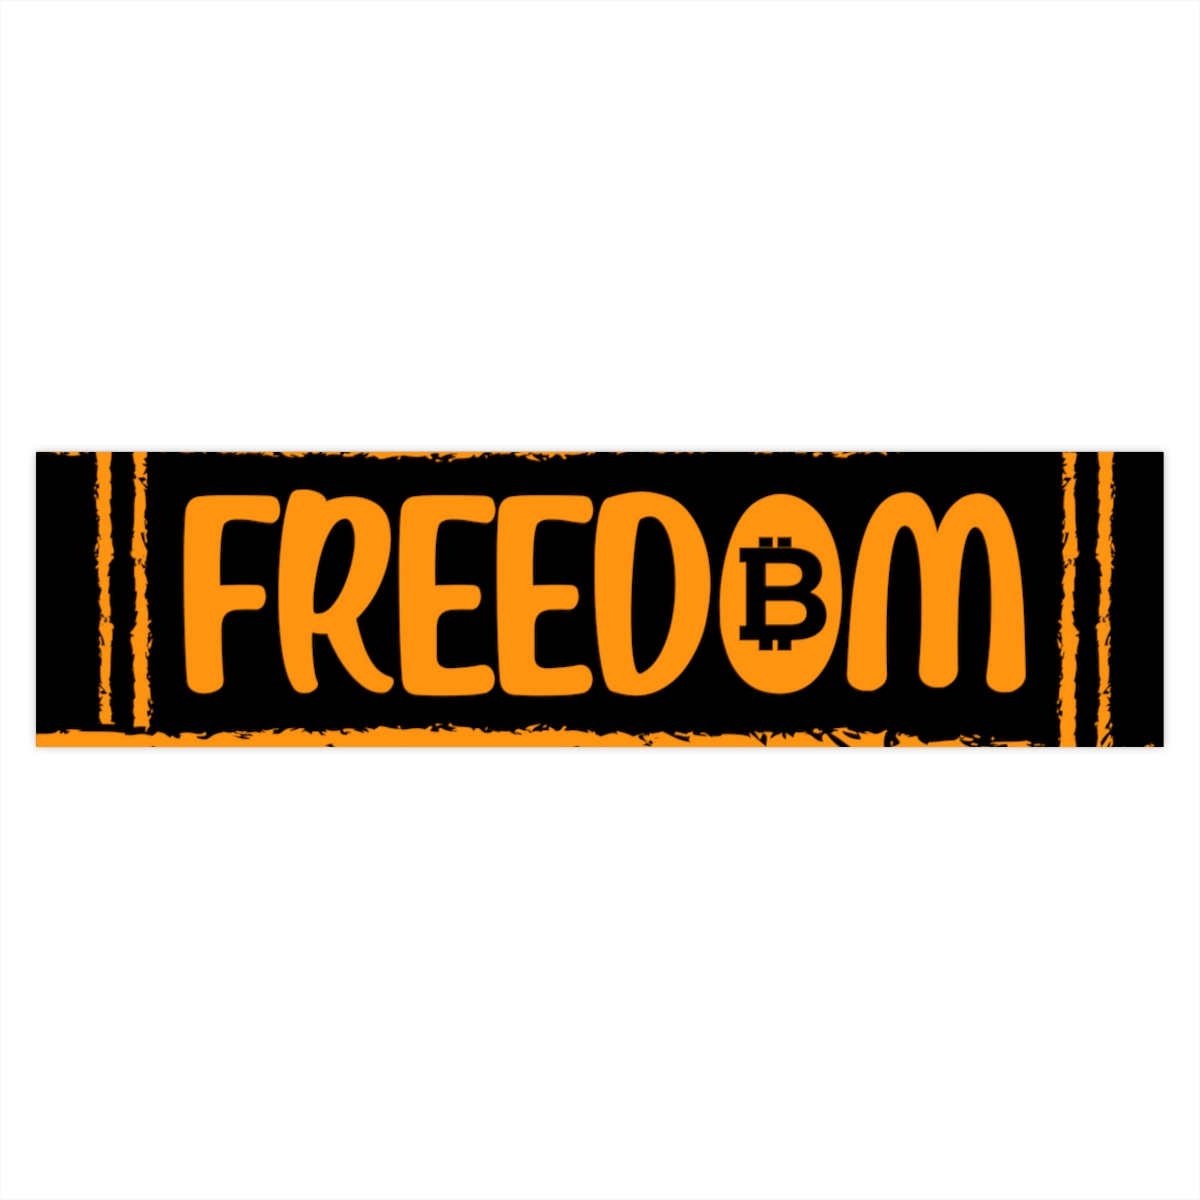 Bitcoin Freedom – Bumper Stickers